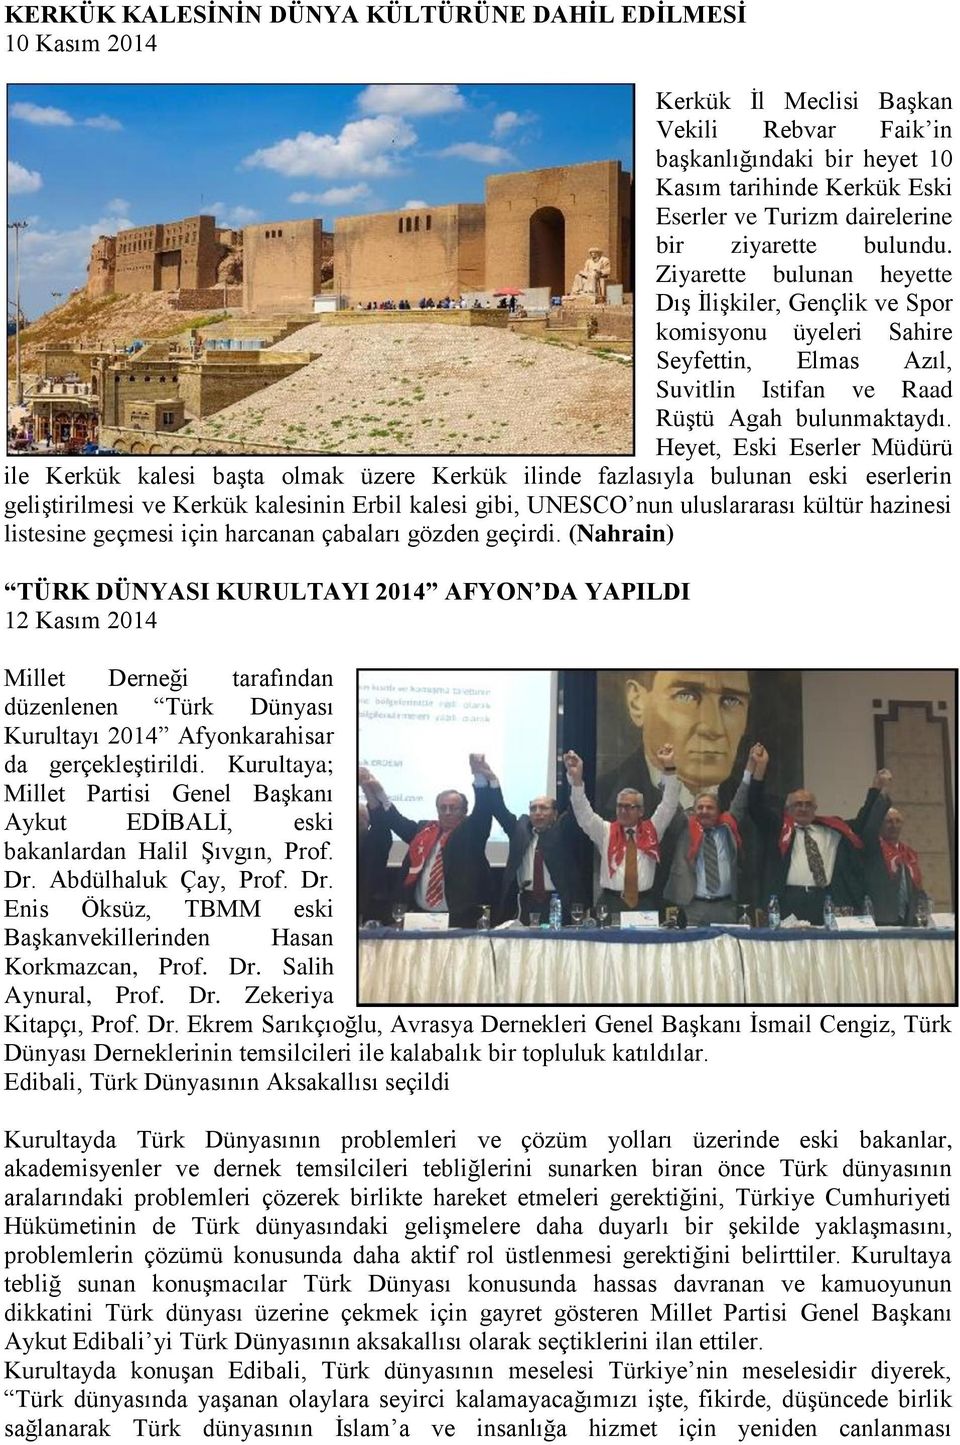 Heyet, Eski Eserler Müdürü ile Kerkük kalesi başta olmak üzere Kerkük ilinde fazlasıyla bulunan eski eserlerin geliştirilmesi ve Kerkük kalesinin Erbil kalesi gibi, UNESCO nun uluslararası kültür